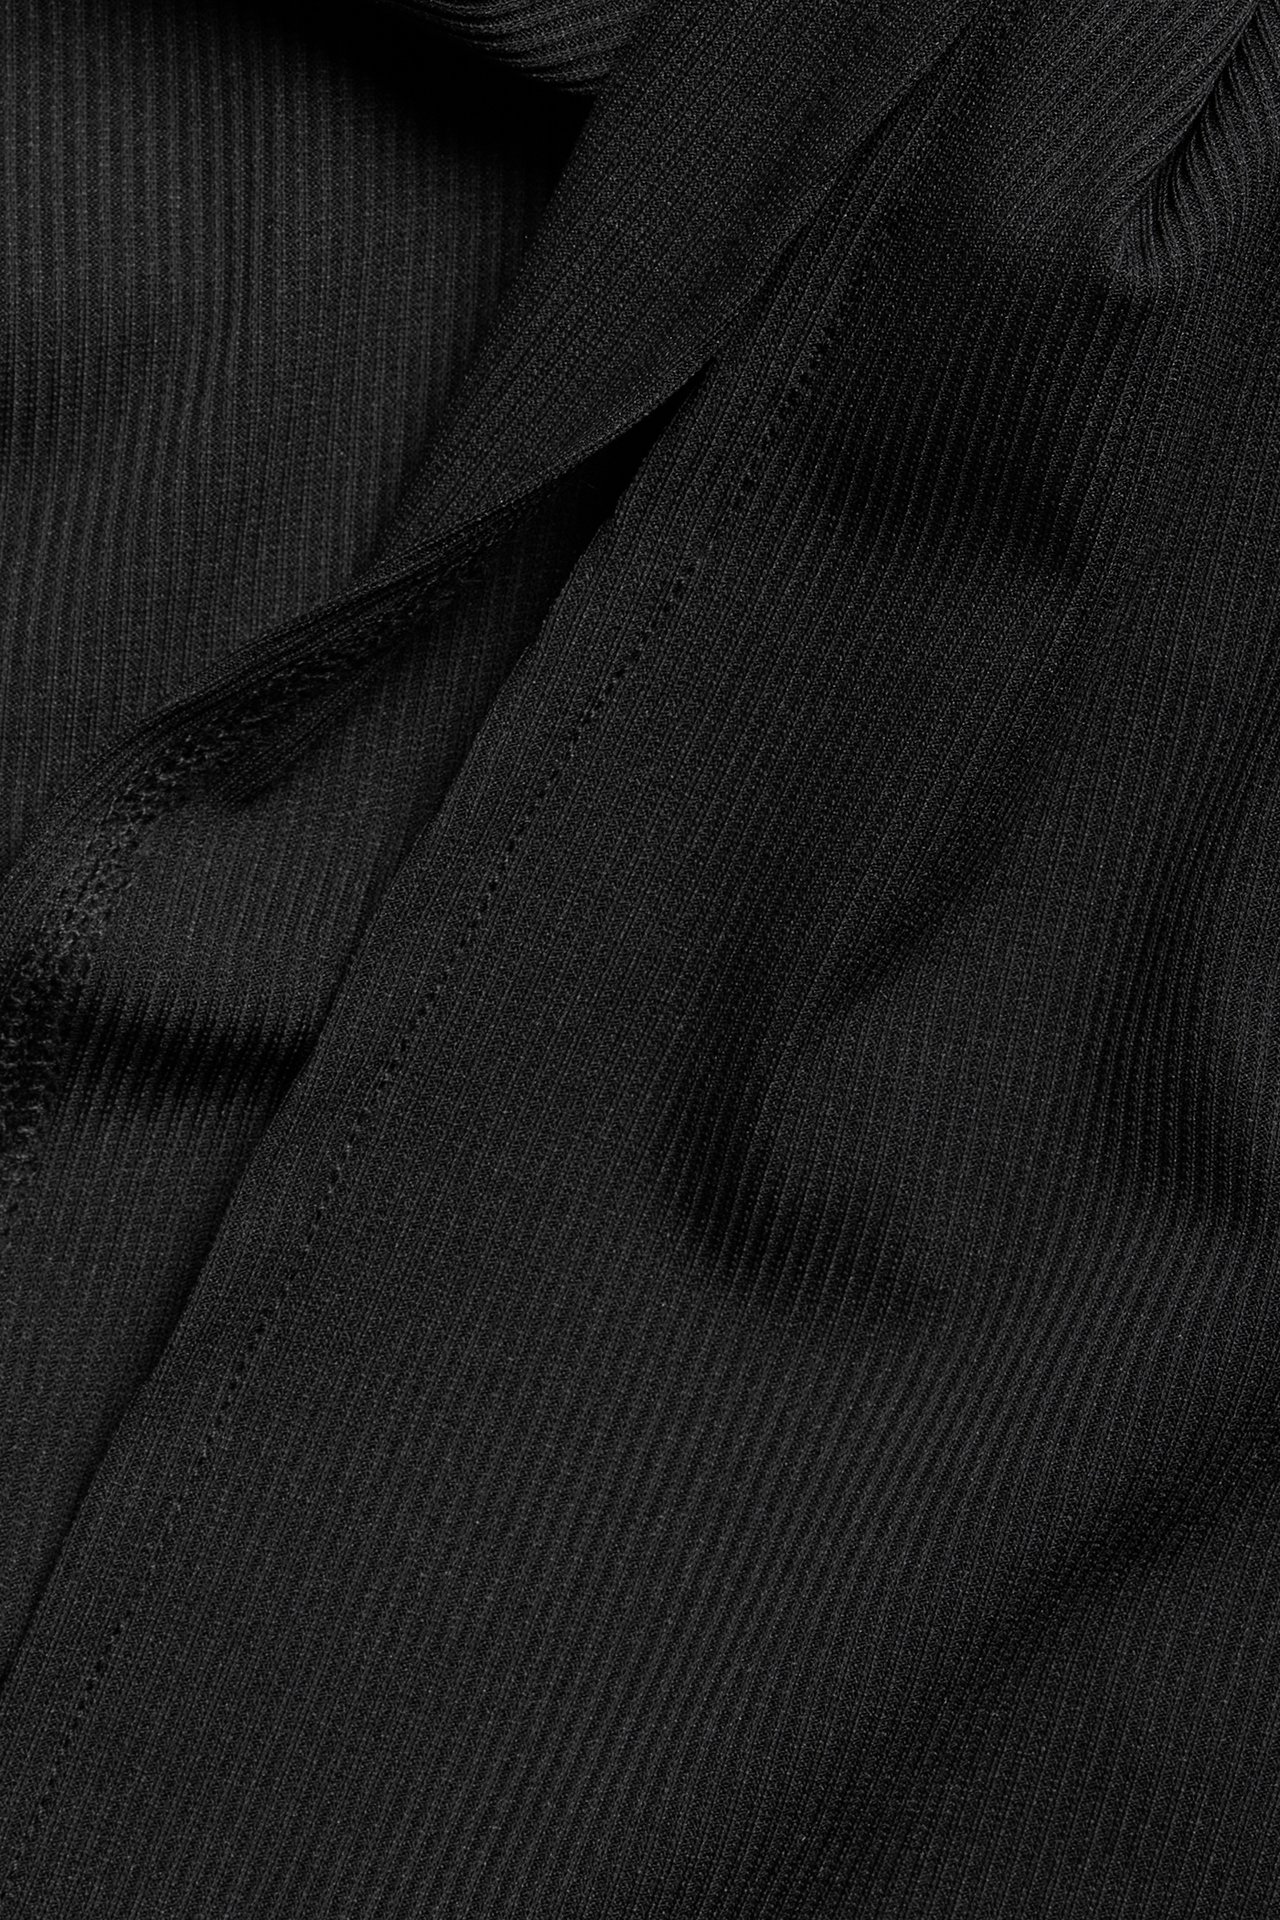 Lyhyemmän malliset housut - Musta - 5